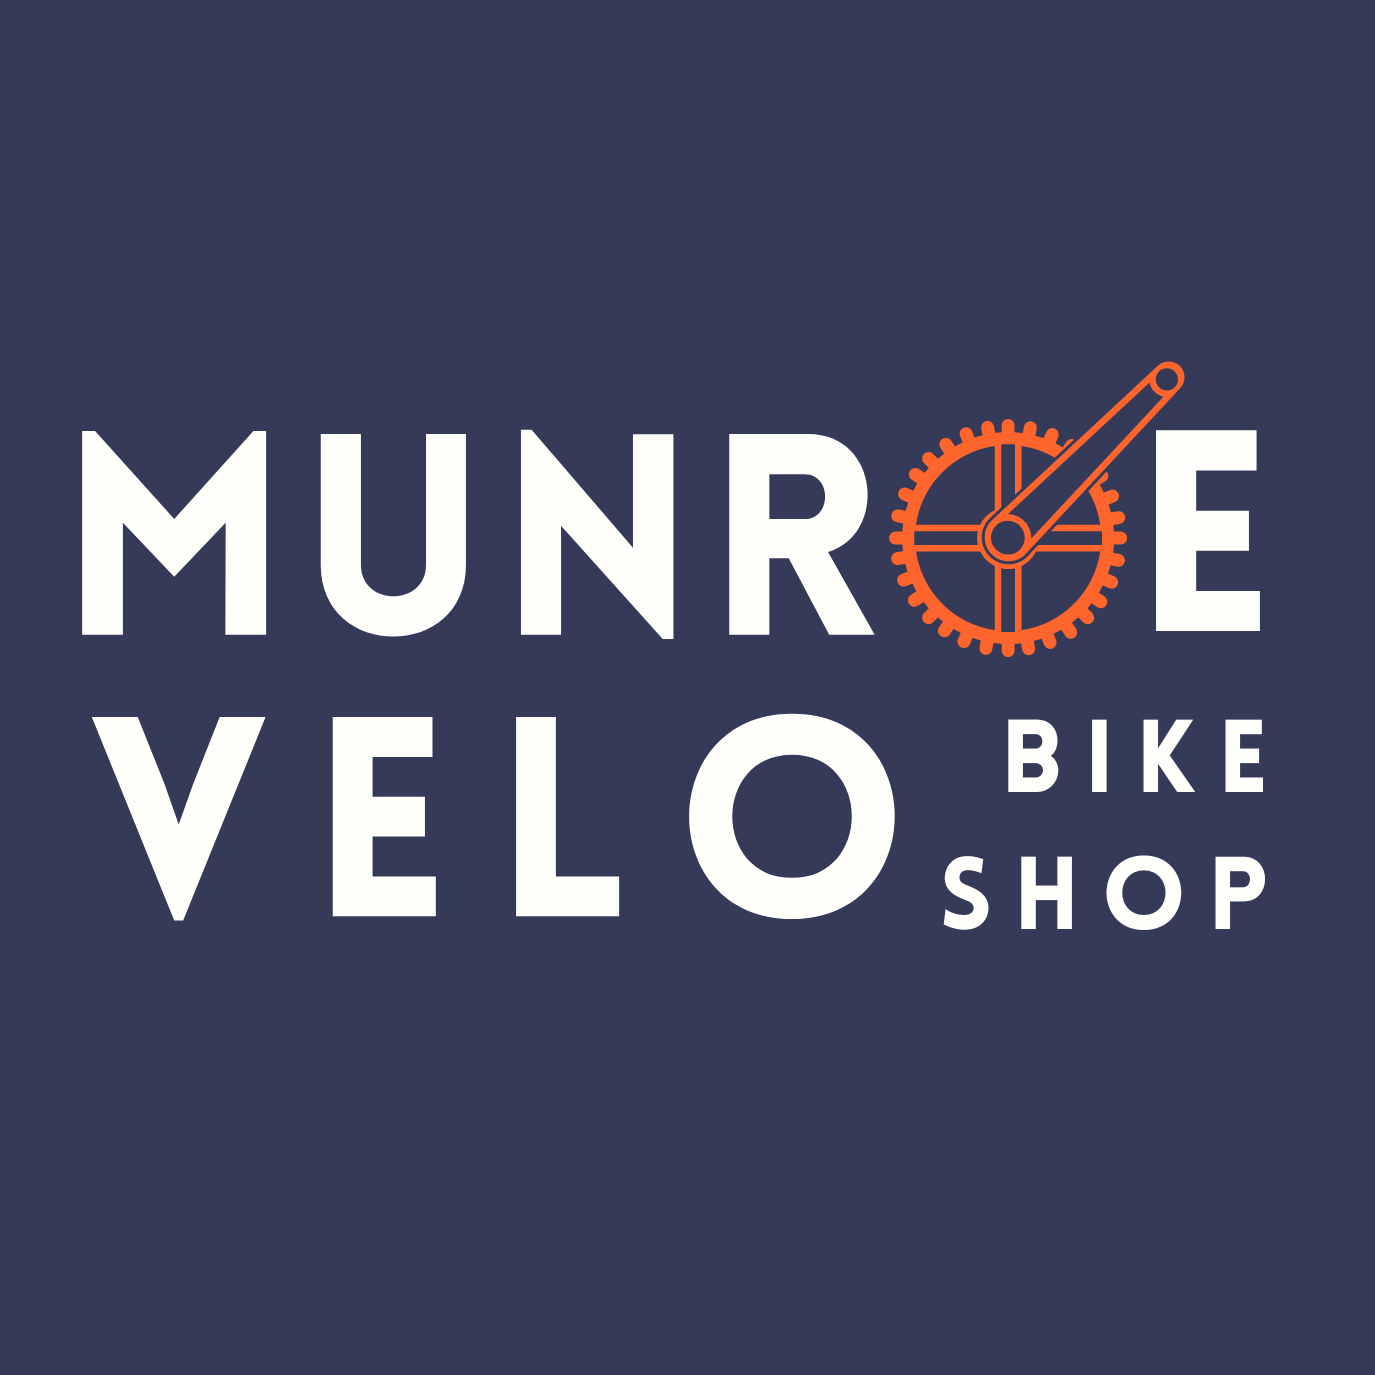 Munroe Velo Bike Shop | Topsfield, Massachusetts | Bicycle repair, rental, and sales